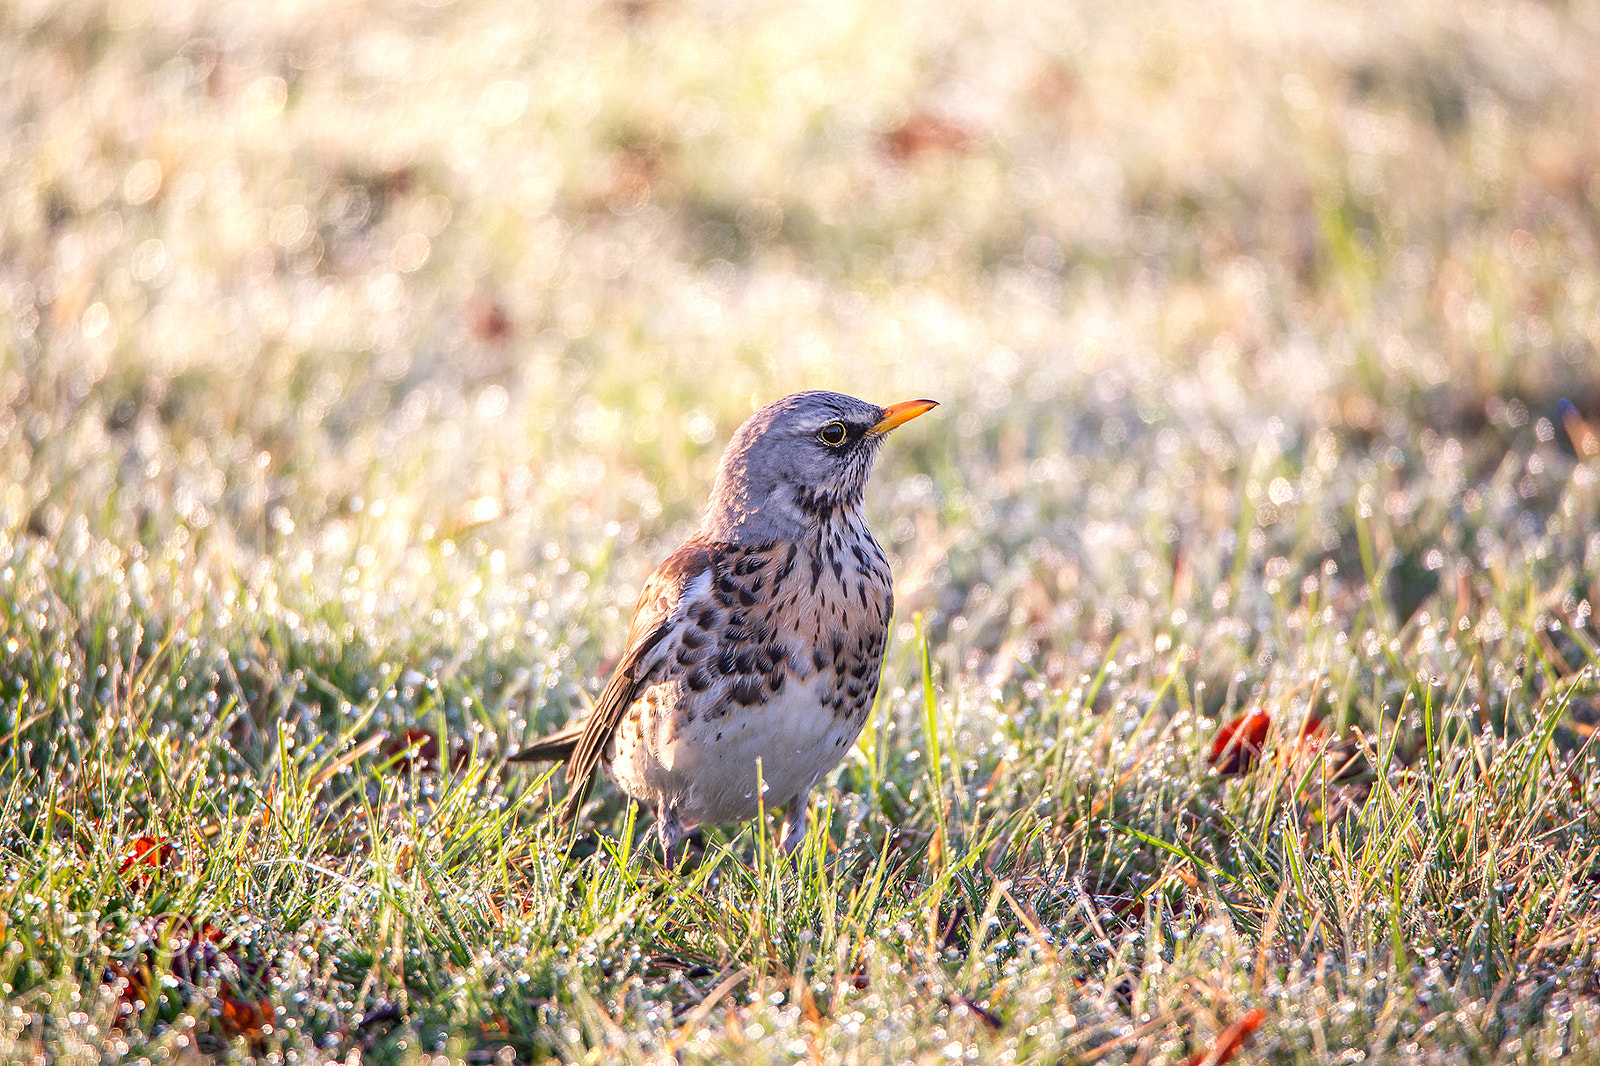 Canon EOS 6D sample photo. Morning bird photography